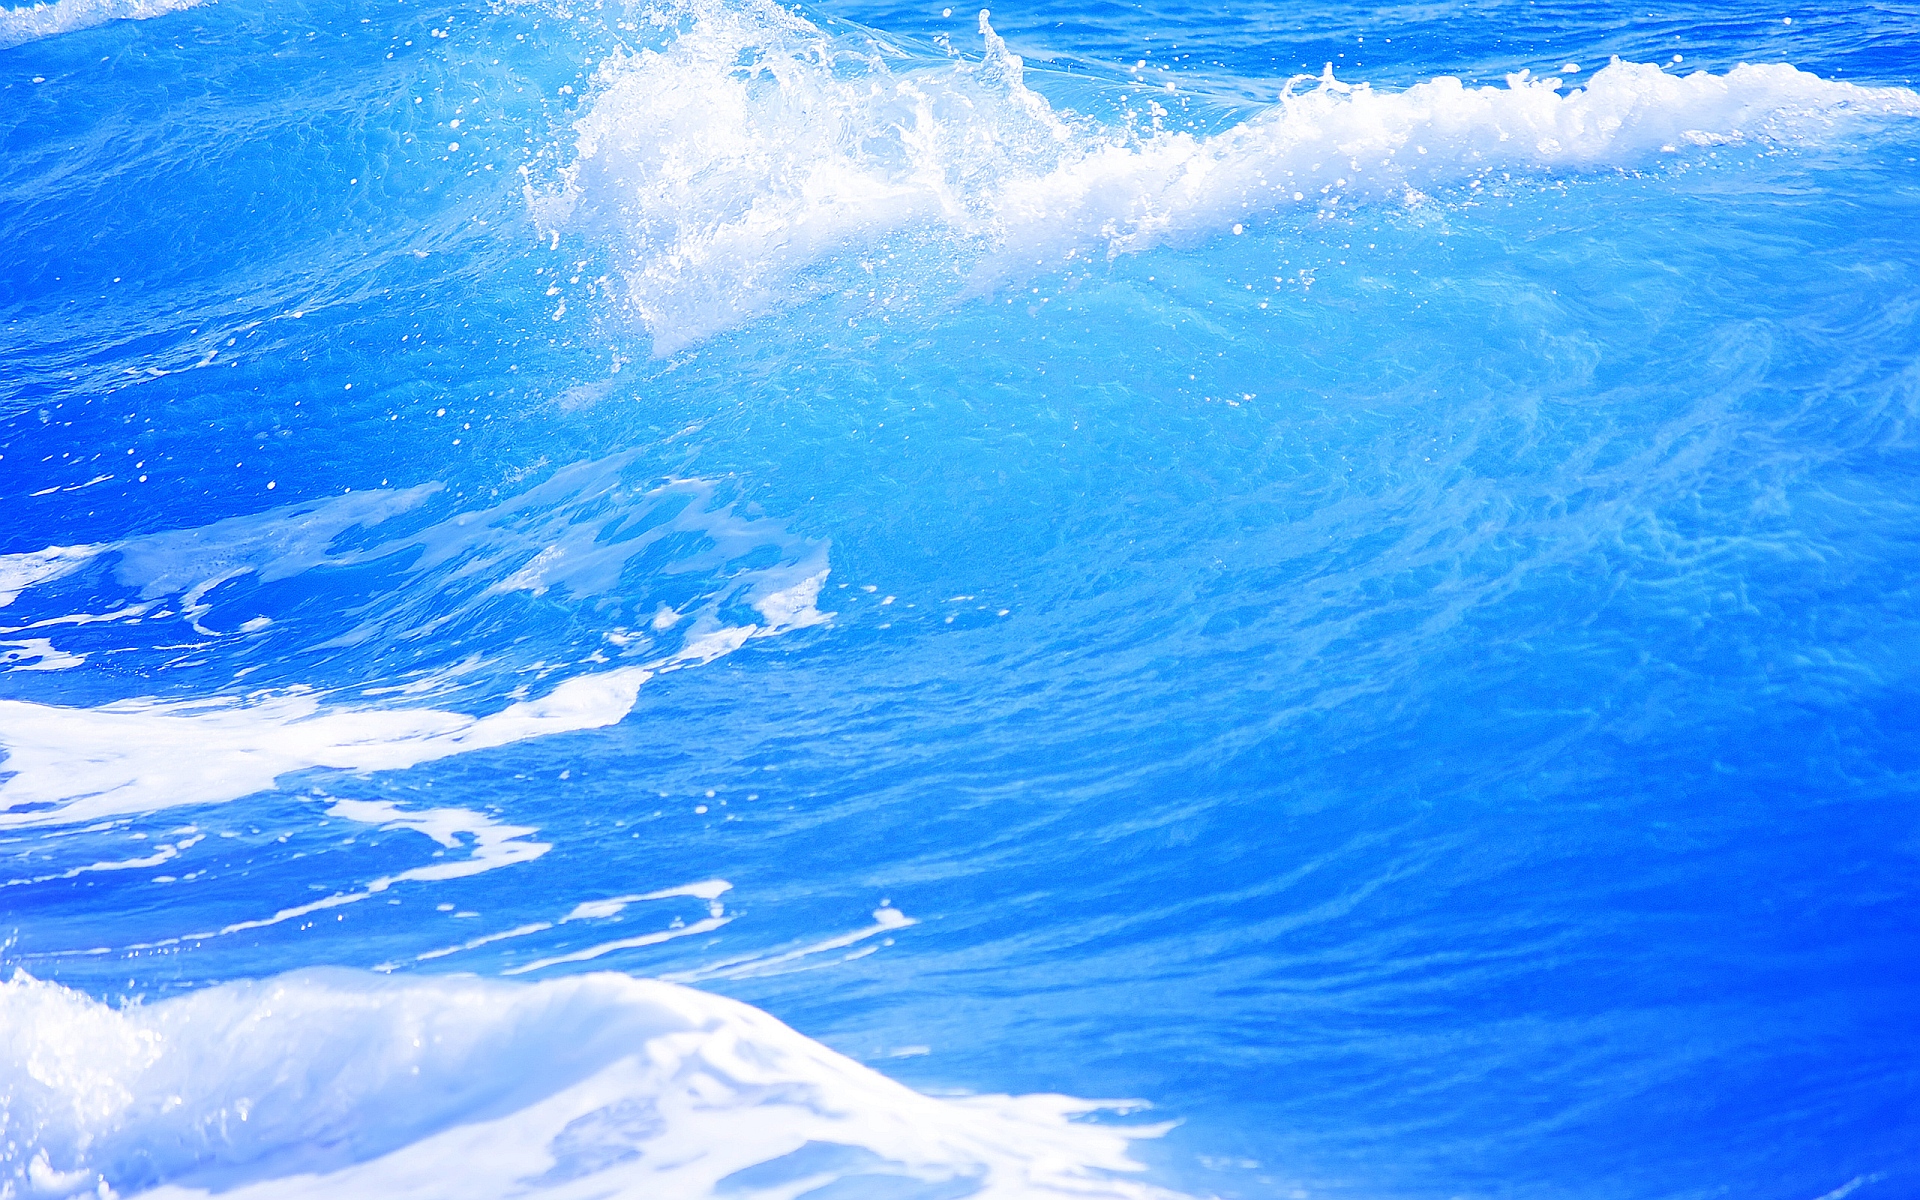 Blue Ocean Waves